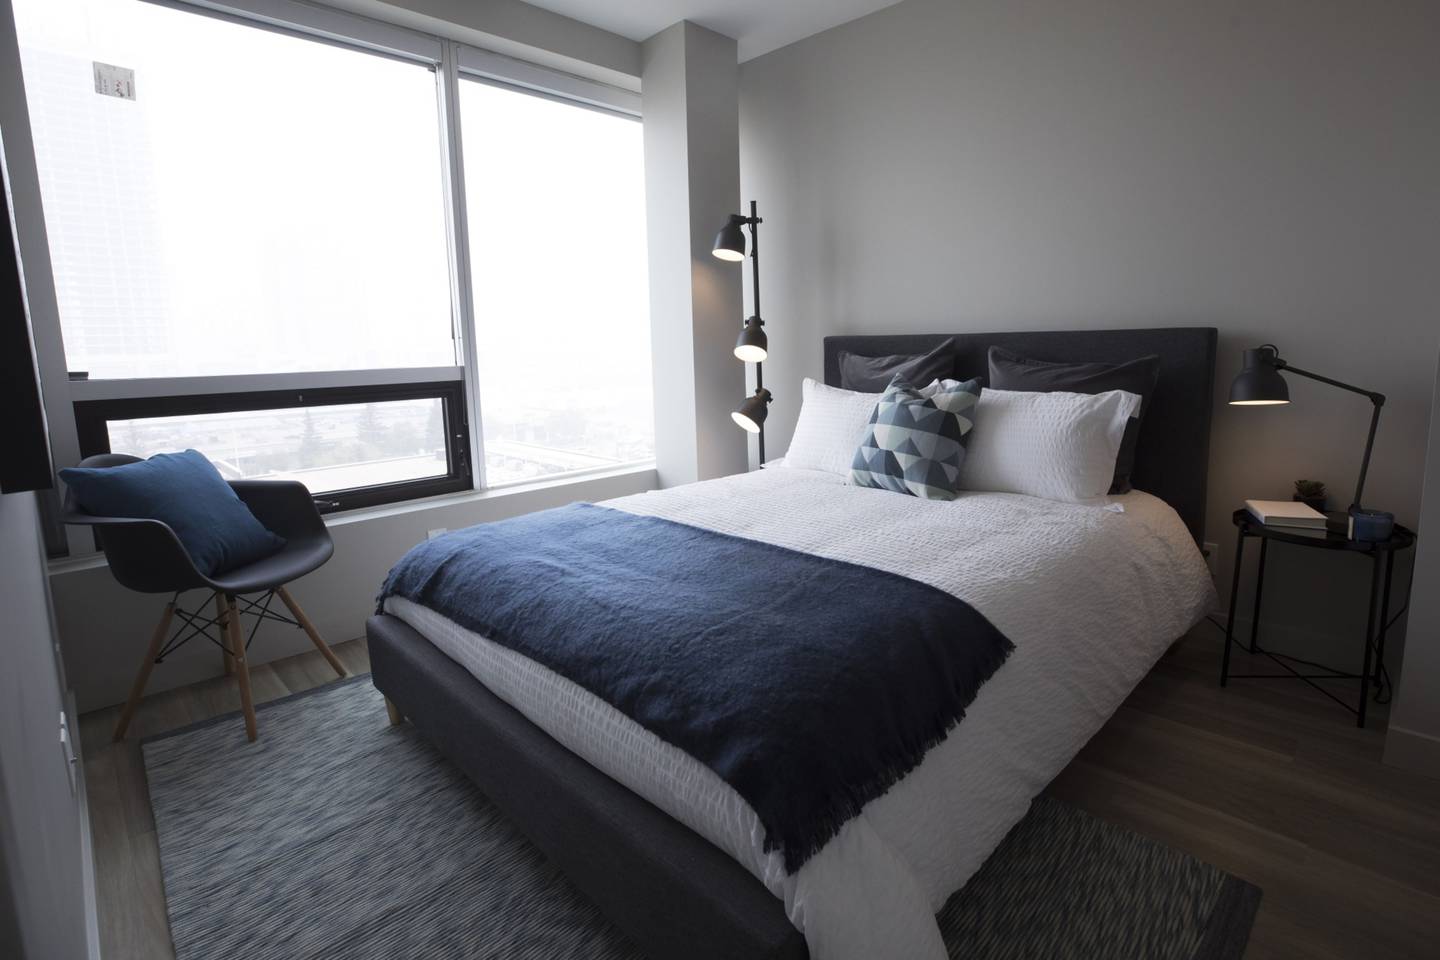 Un dormitorio modelo se ve dentro del edificio de apartamentos Strategic Group Cube en Calgary, Alberta, Canadá, el viernes 31 de mayo de 2019.